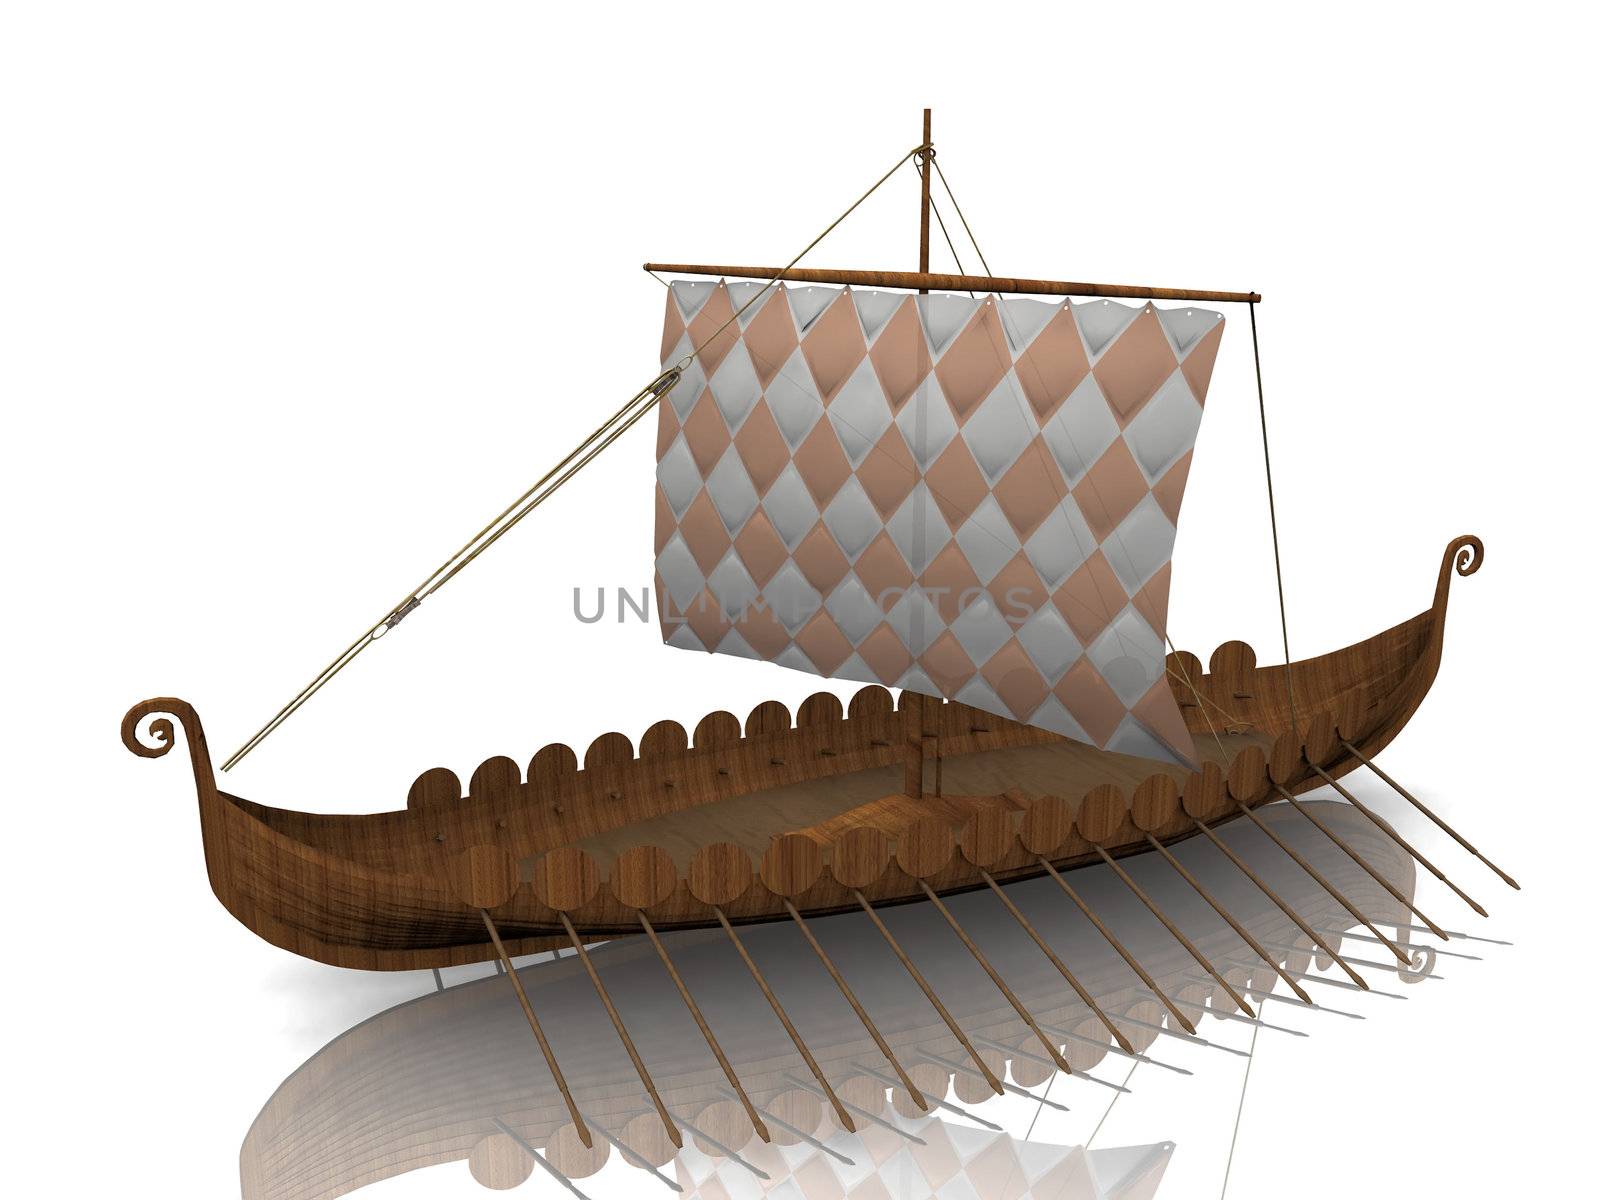 The  Viking warship on white background